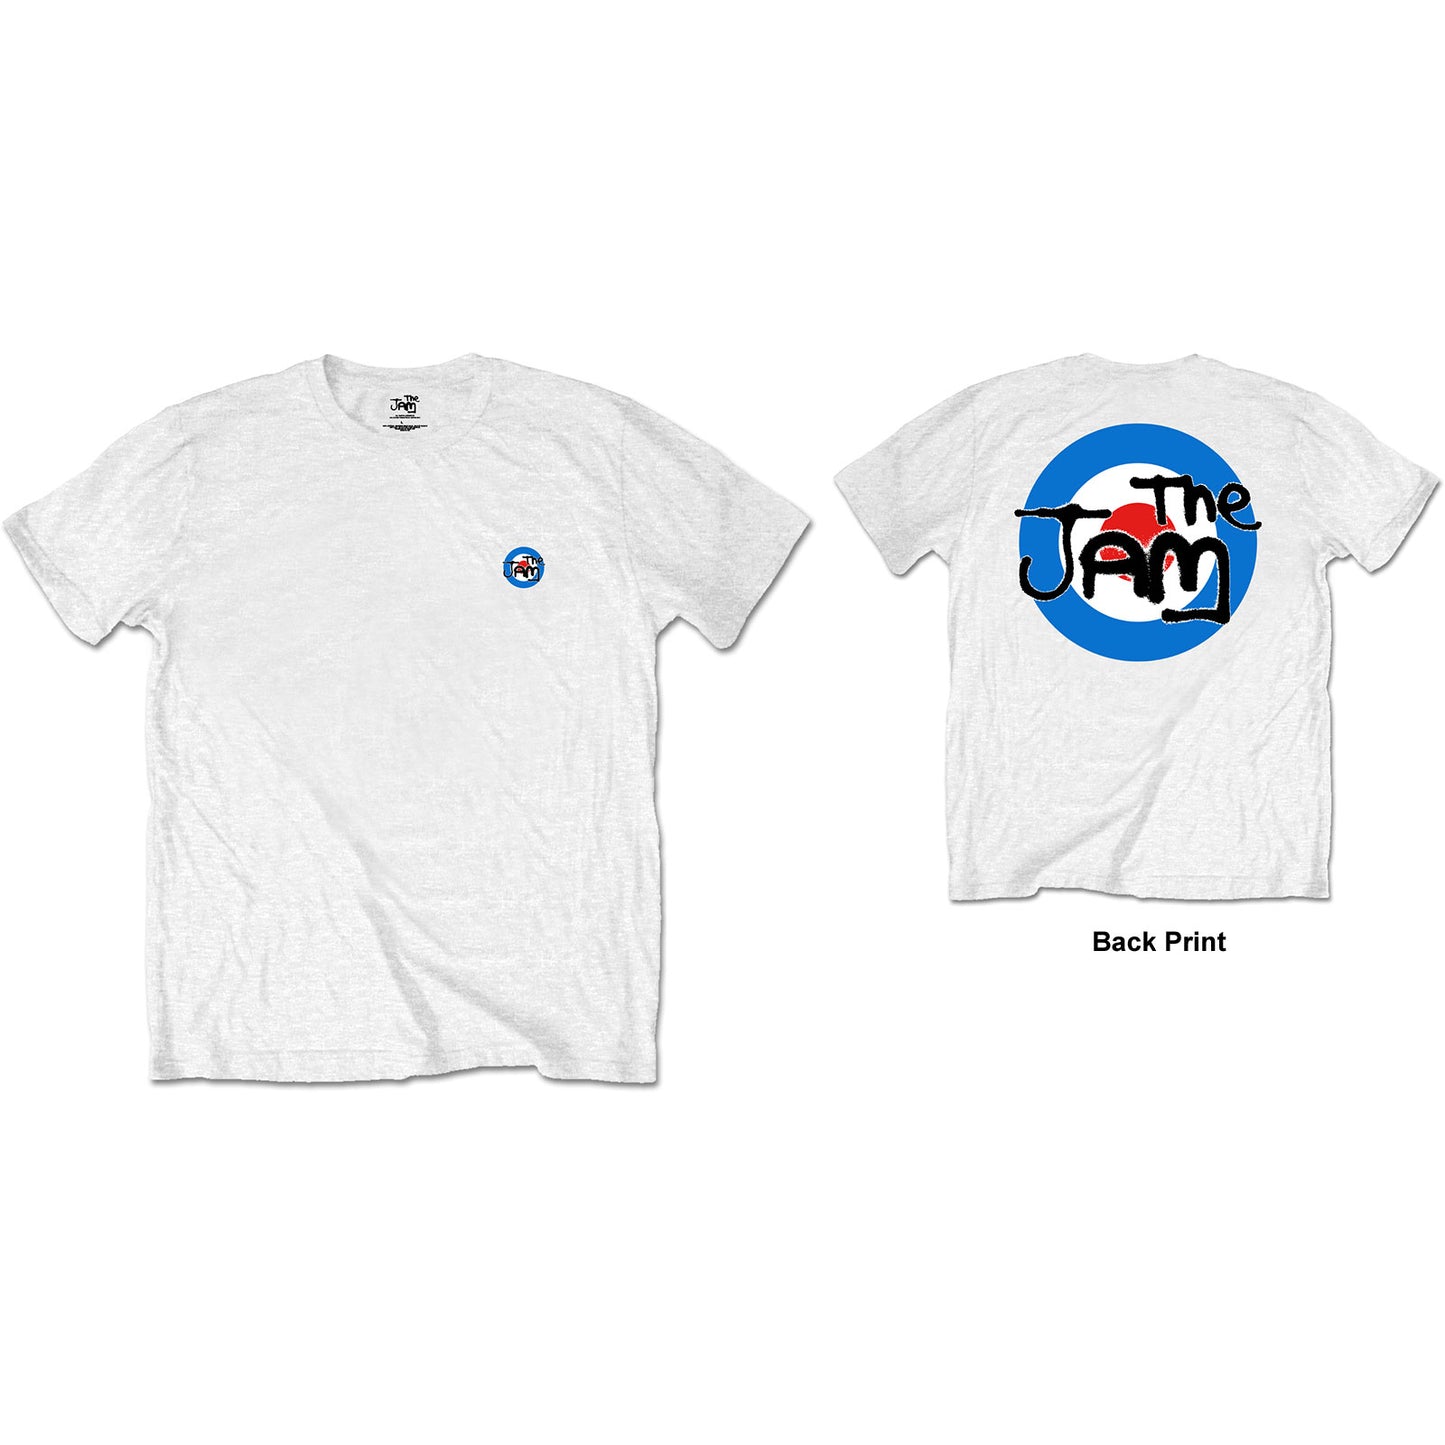 The Jam T-Shirt: Target Logo